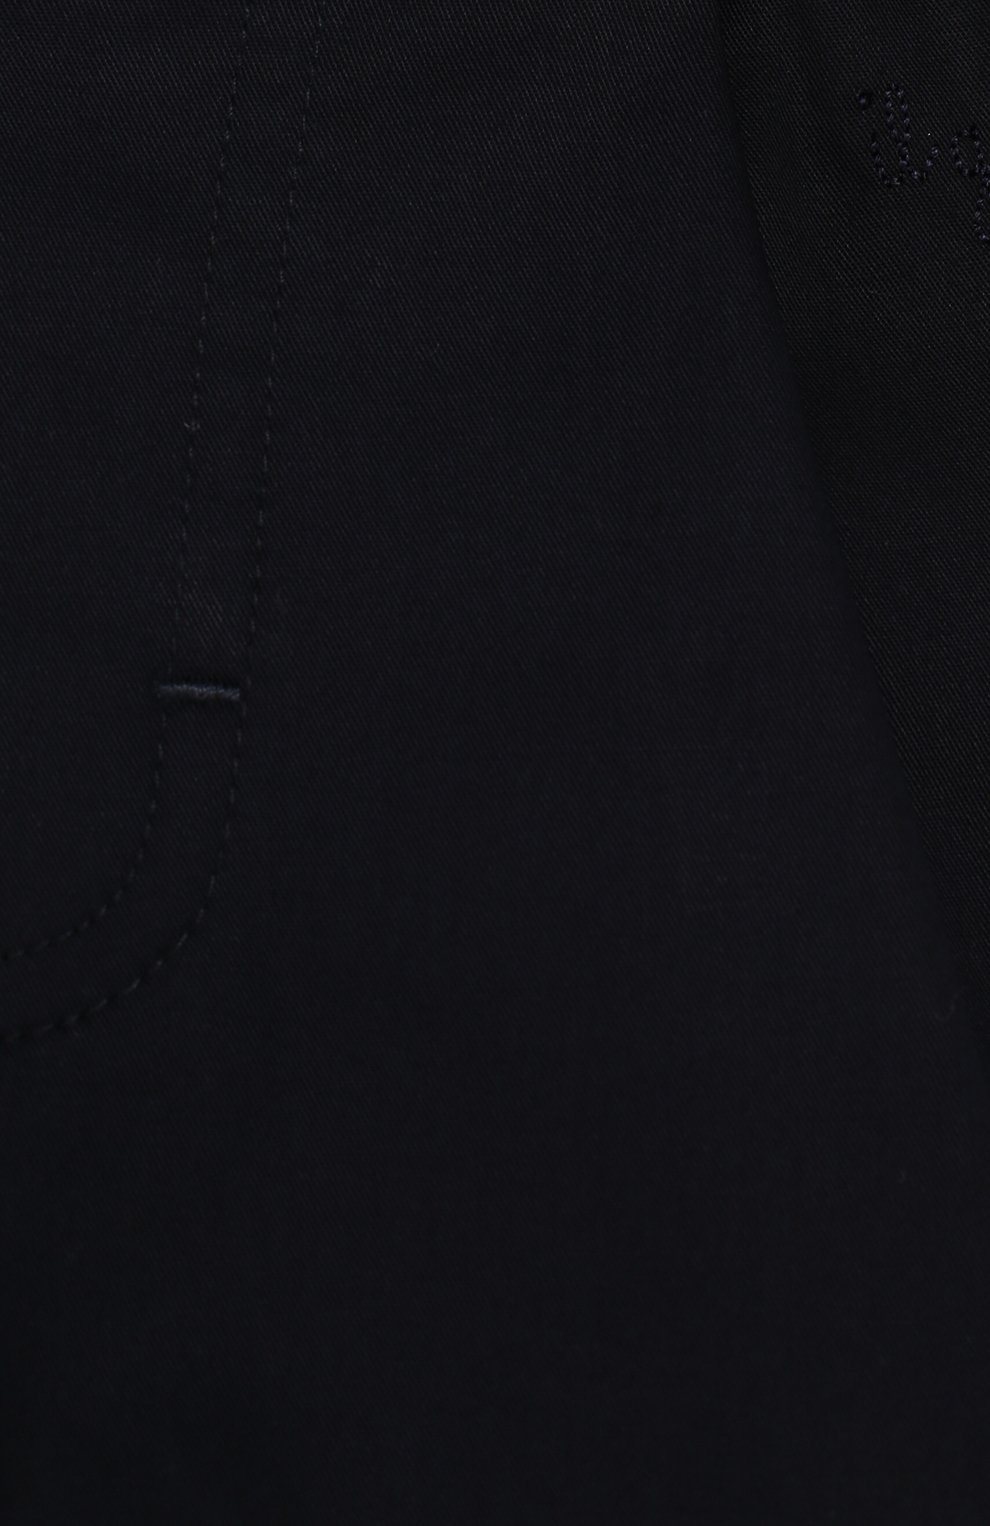 Детские хлопковые шорты IL GUFO темно-синего цвета, арт. P20PB019C0006/12M-18M | Фото 3 (Материал внешний: Хлопок; Статус проверки: Проверена категория)